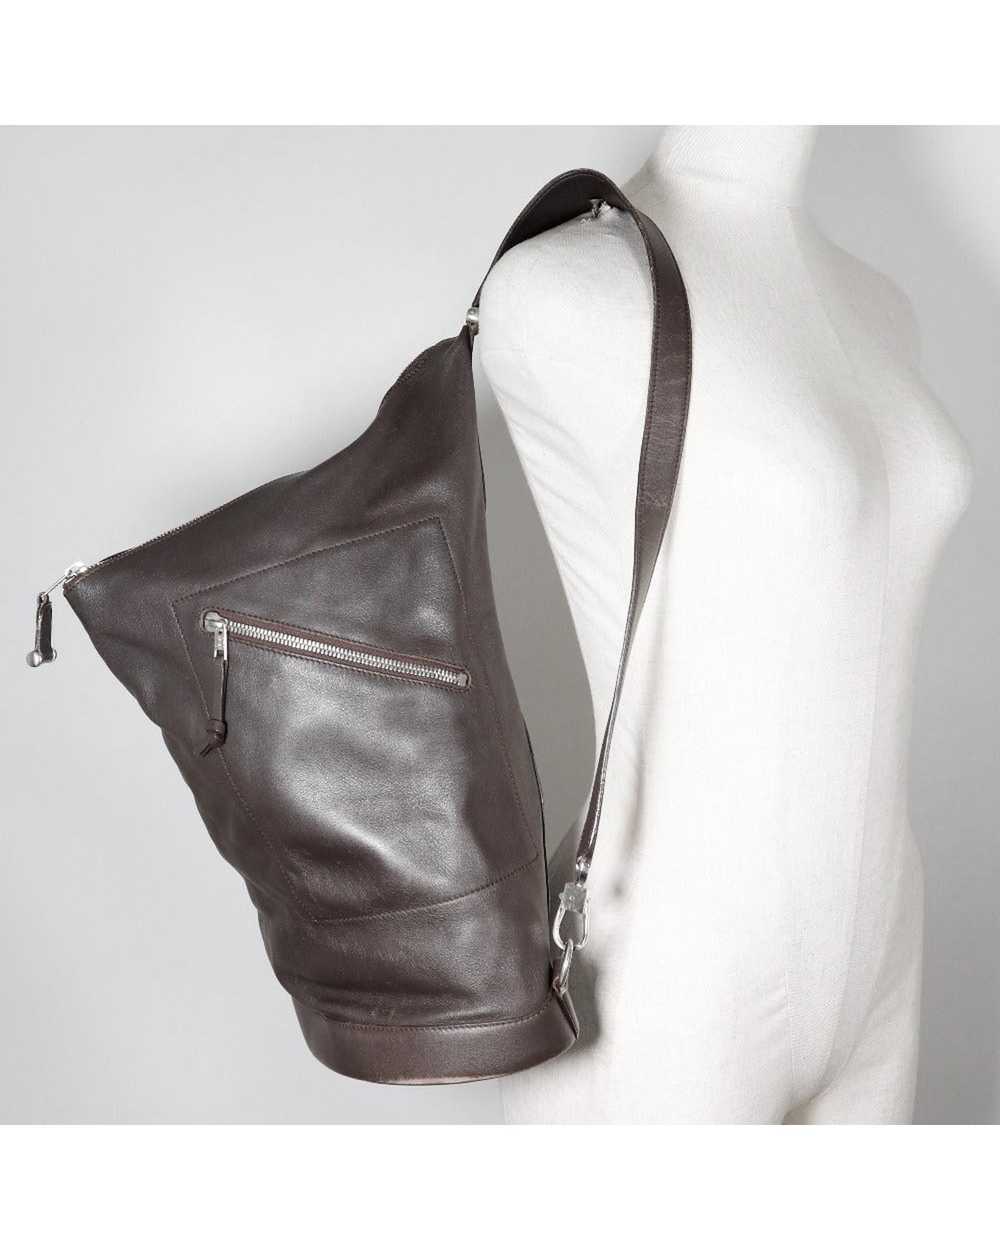 Loewe Brown Leather One-Shoulder Bag - image 8